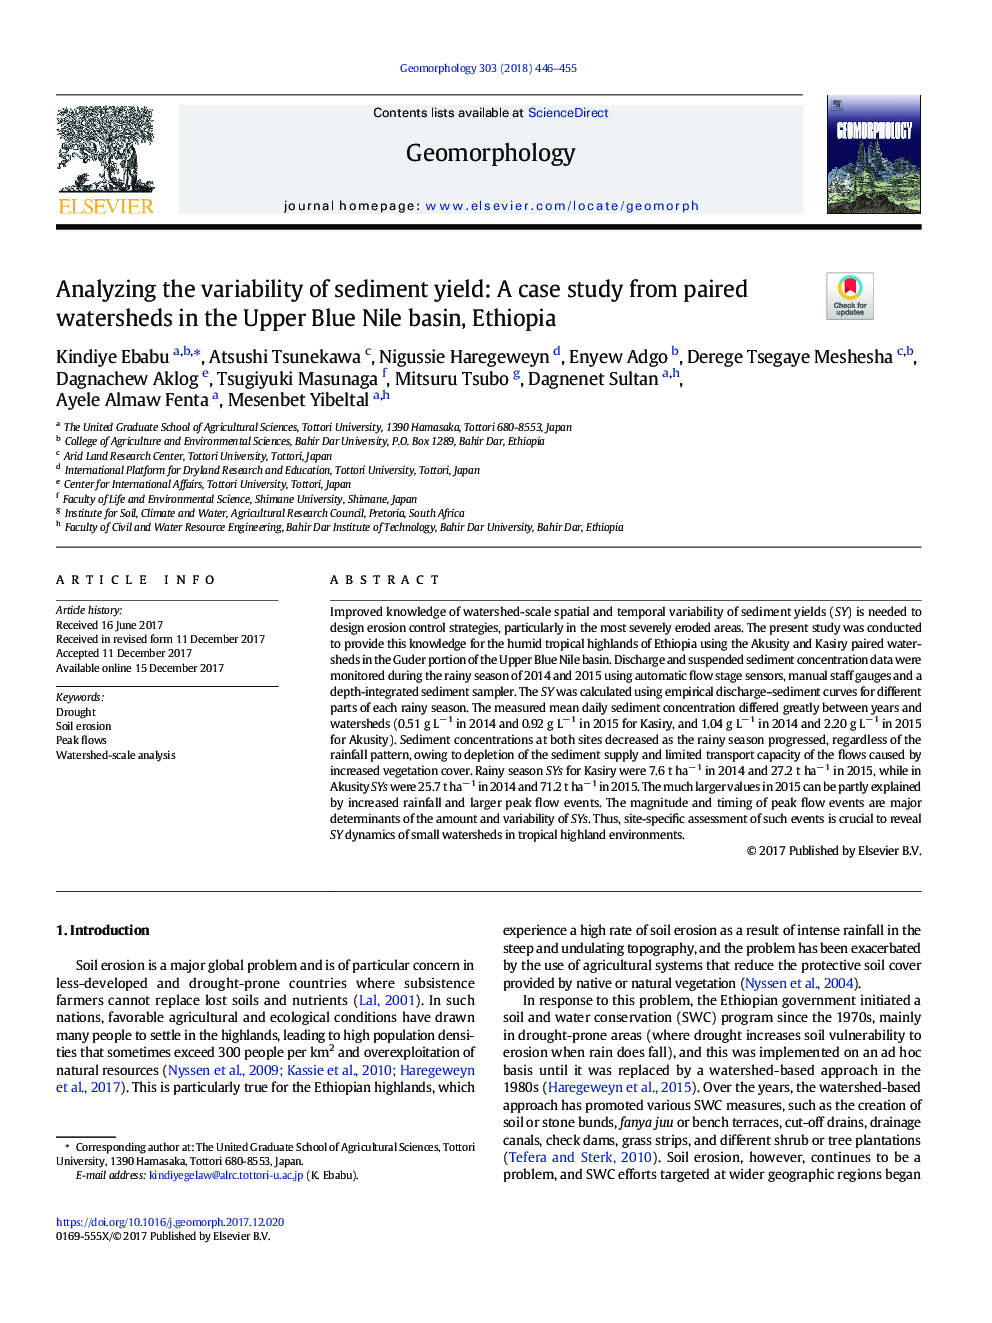 تجزیه و تحلیل تنوع عملکرد رسوب: مطالعه موردی از حوضه های بخار در حوضه آبی نیل بالایی، اتیوپی